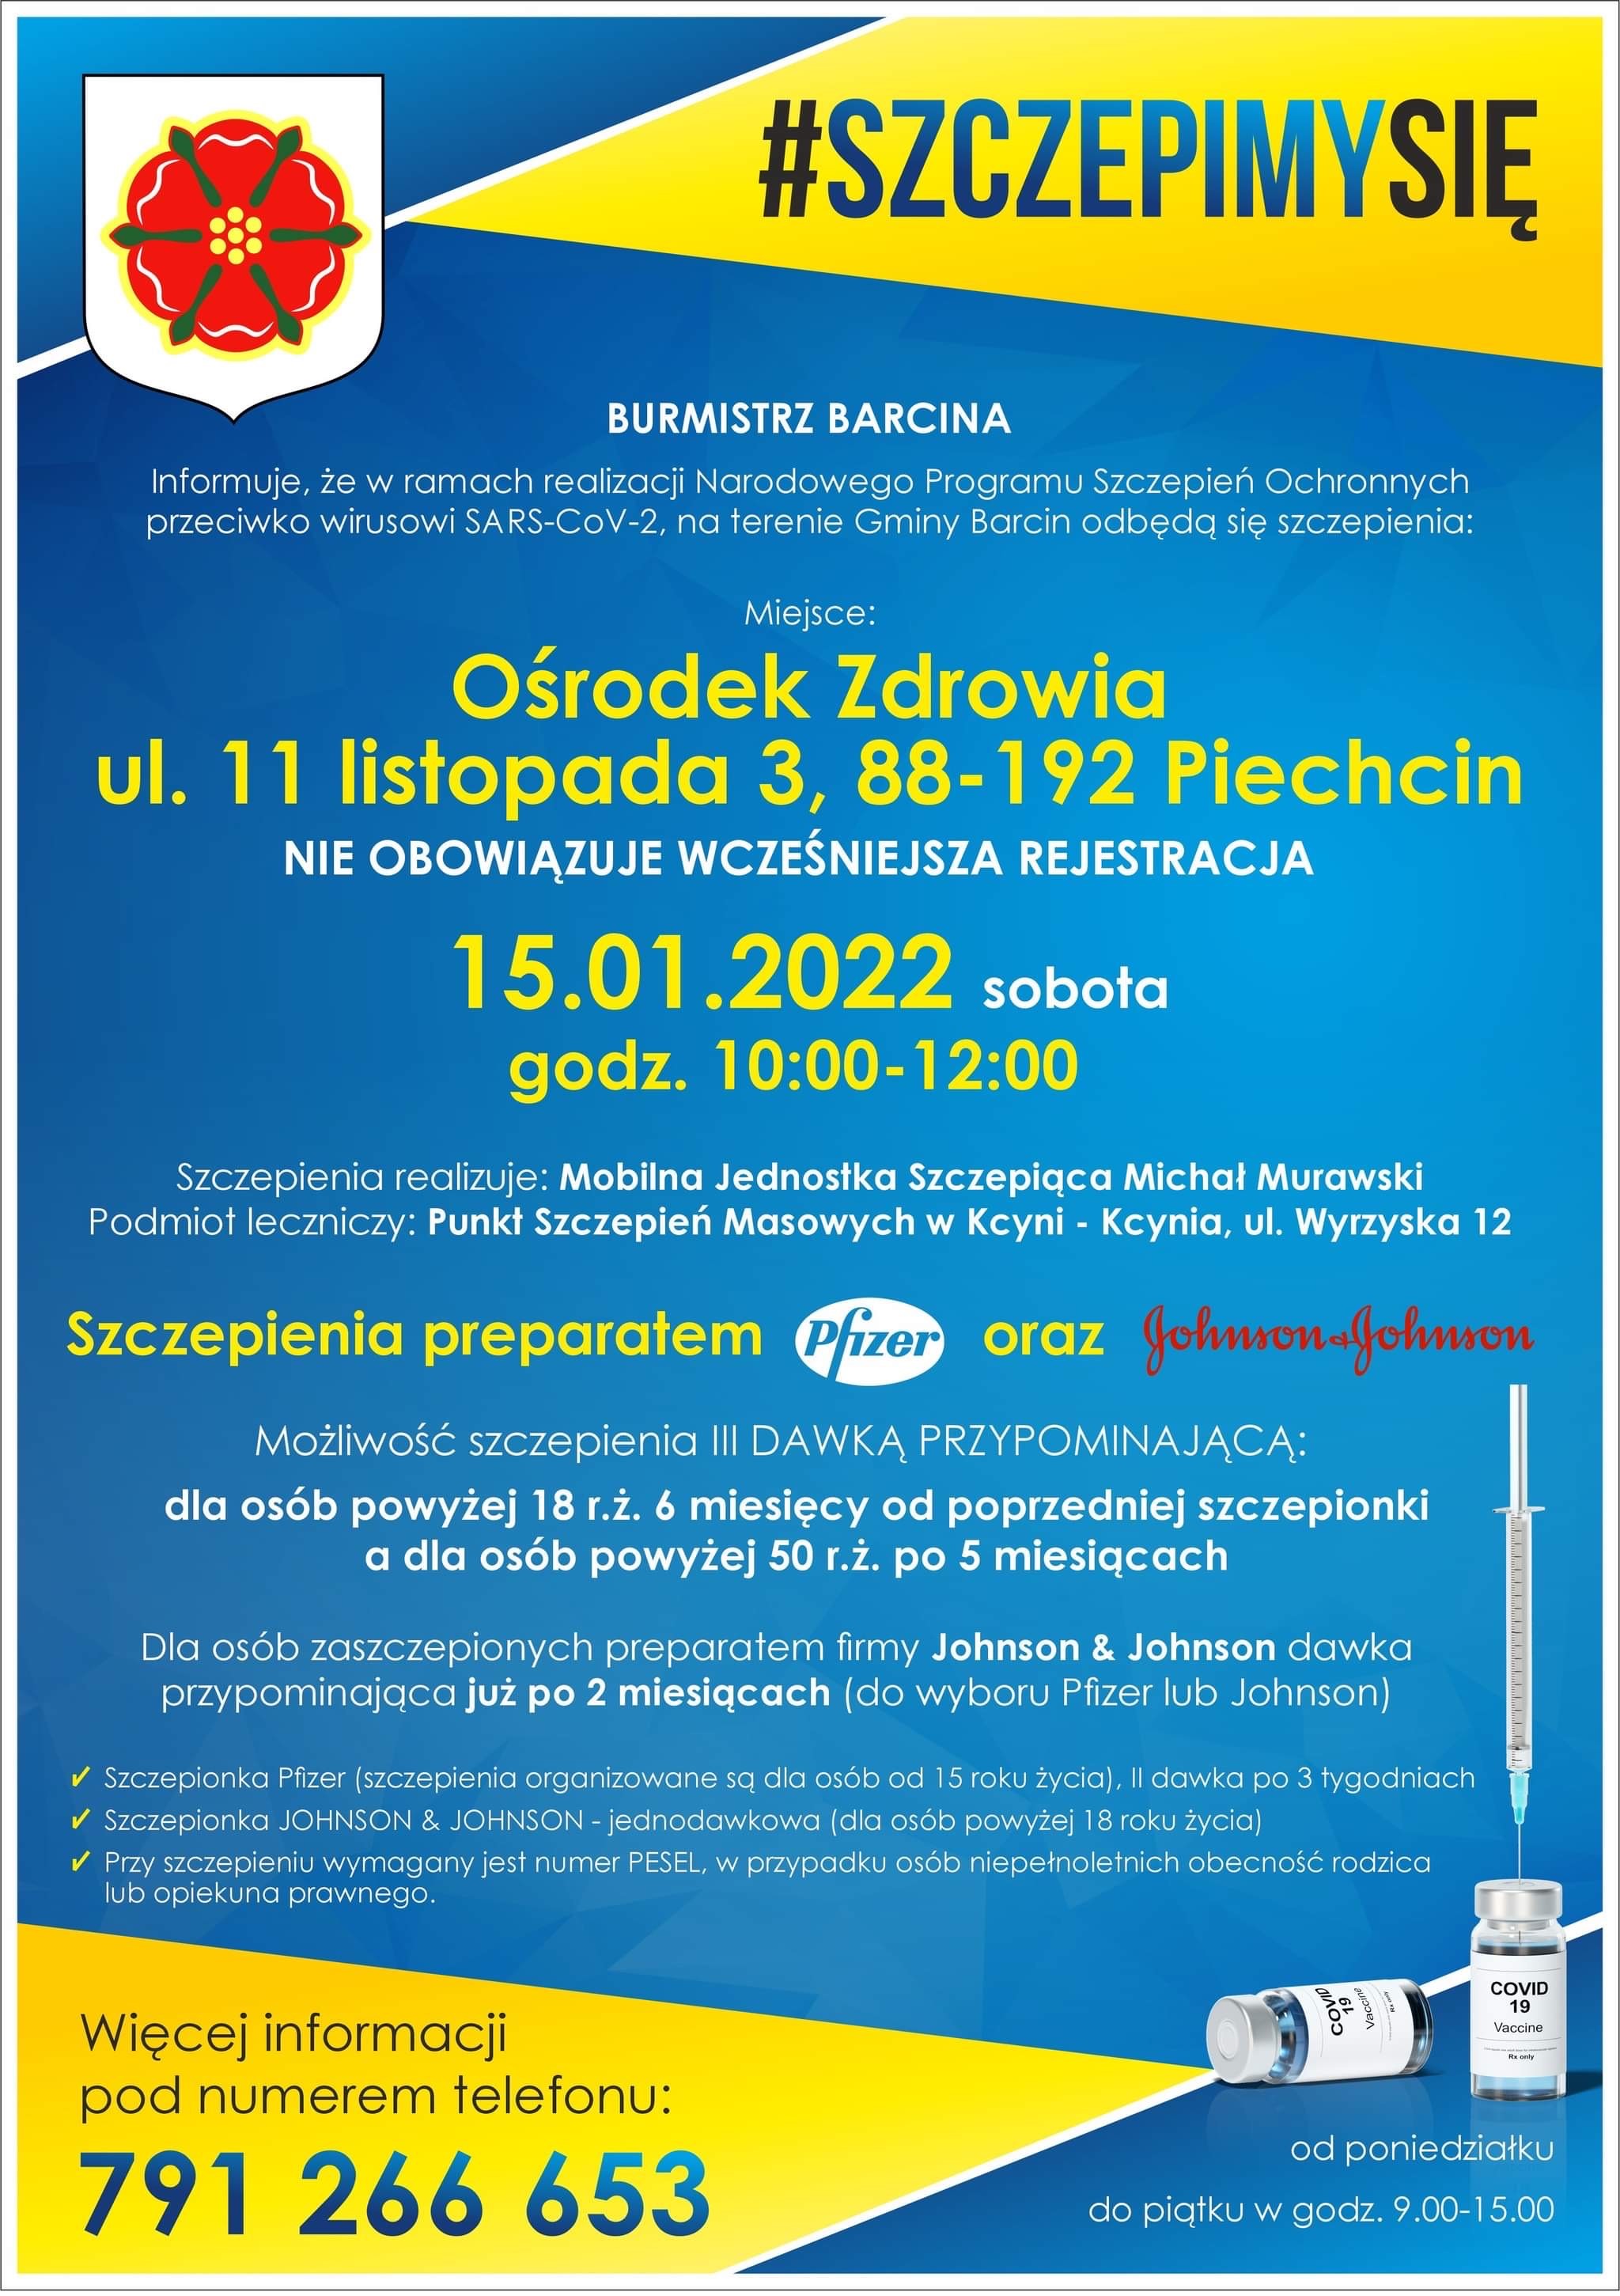 Plakat promujący szczepienia w Piechcinie